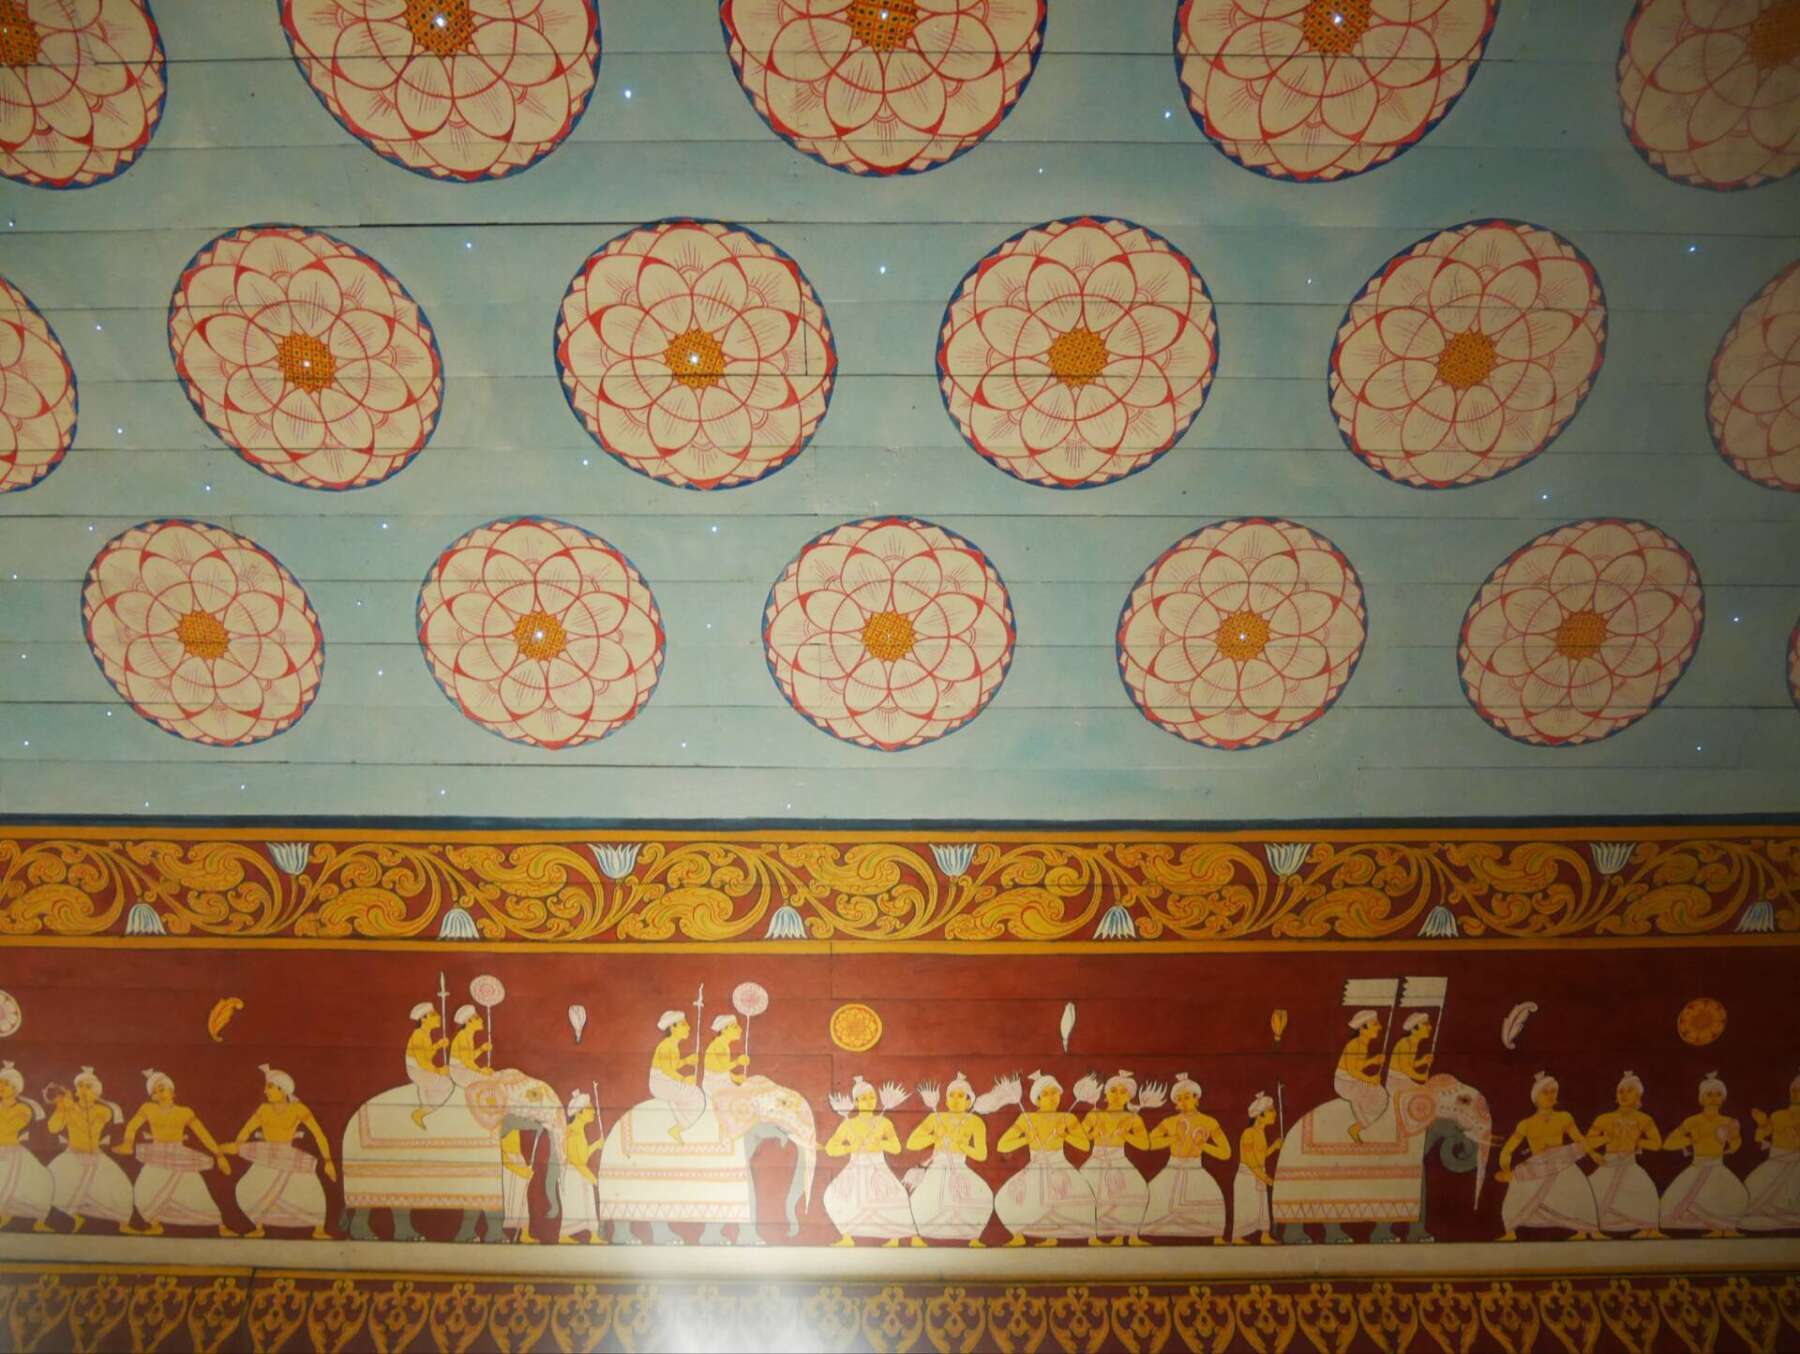 วัดพระเขี้ยวแก้ว (Temple of Tooth Relic) แคนดี้ (Kandy) ศรีลังกา (Srilanka) 